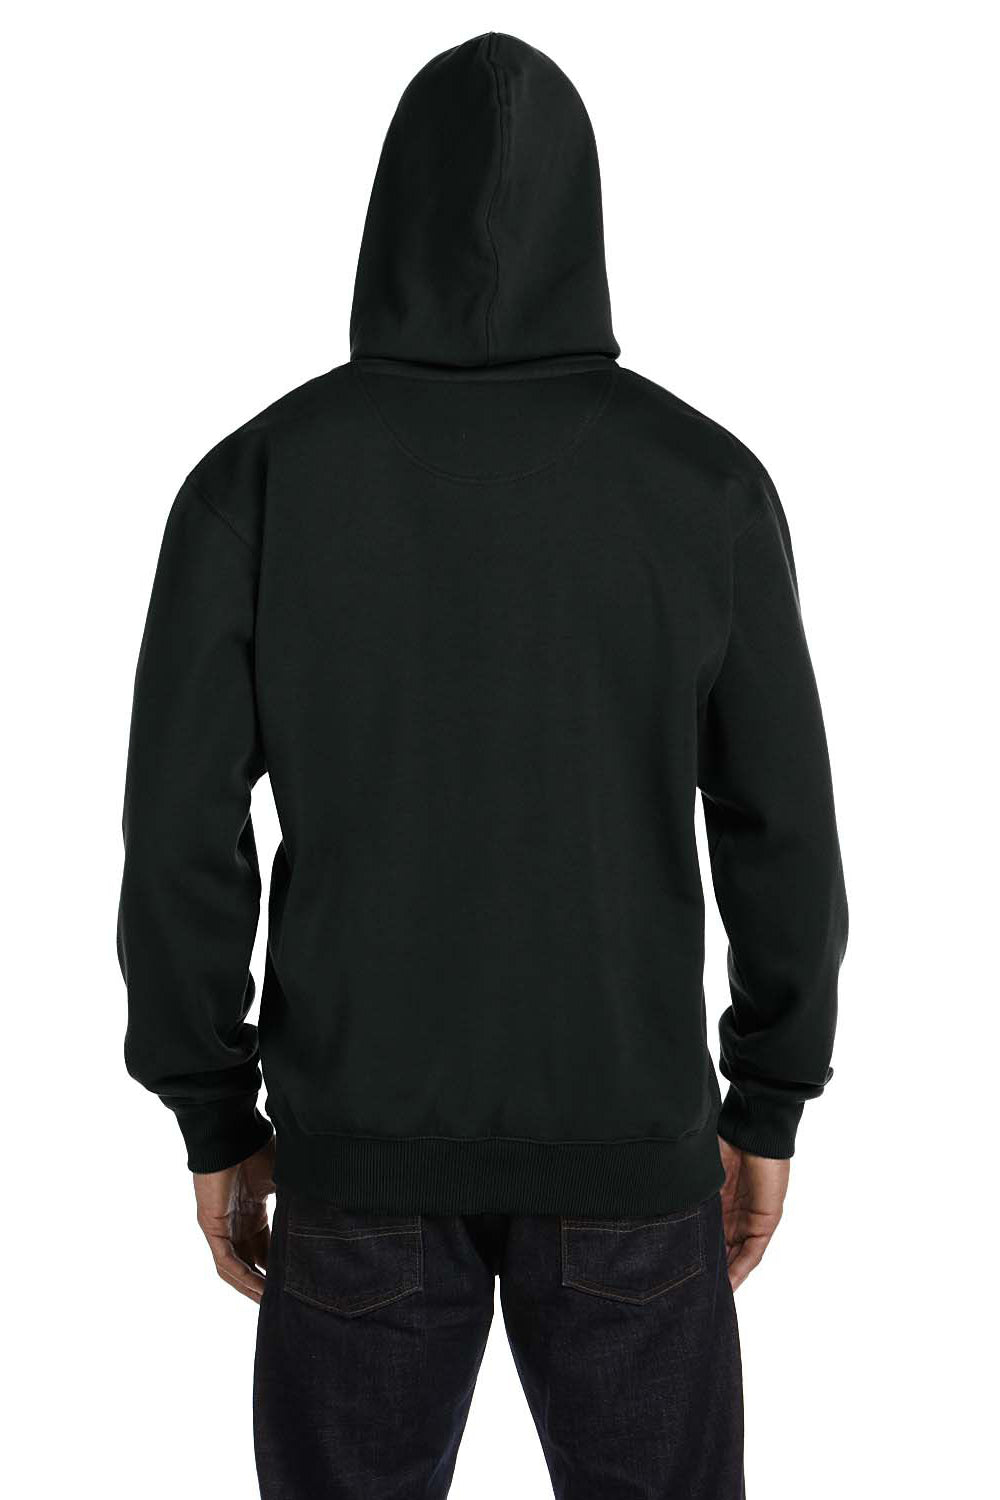 Econscious EC5500 Mens Hooded Sweatshirt Hoodie Black Back